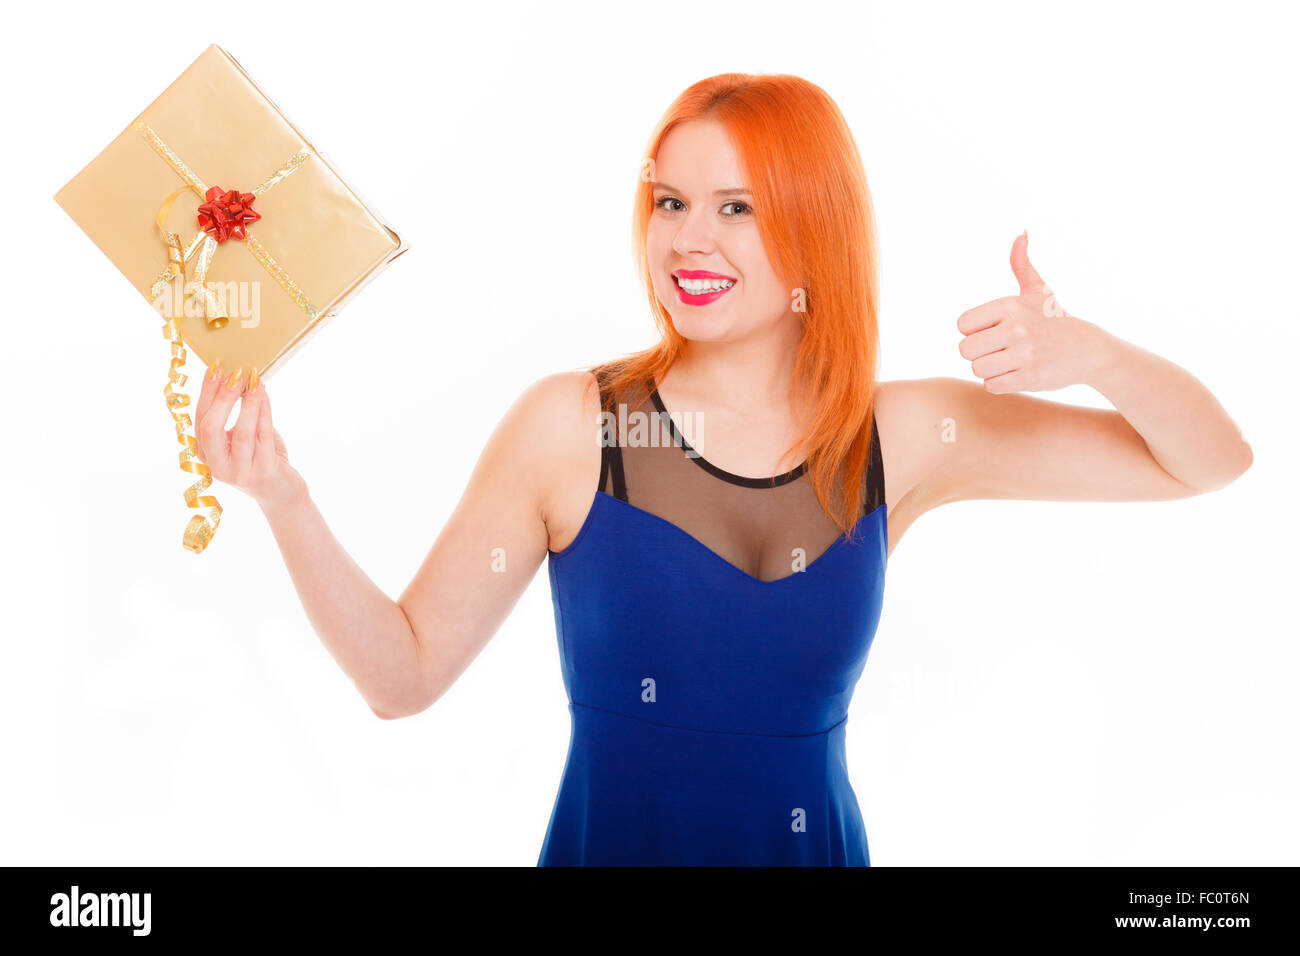 Vacaciones felicidad amor concepto - chica con caja de regalo Foto de stock